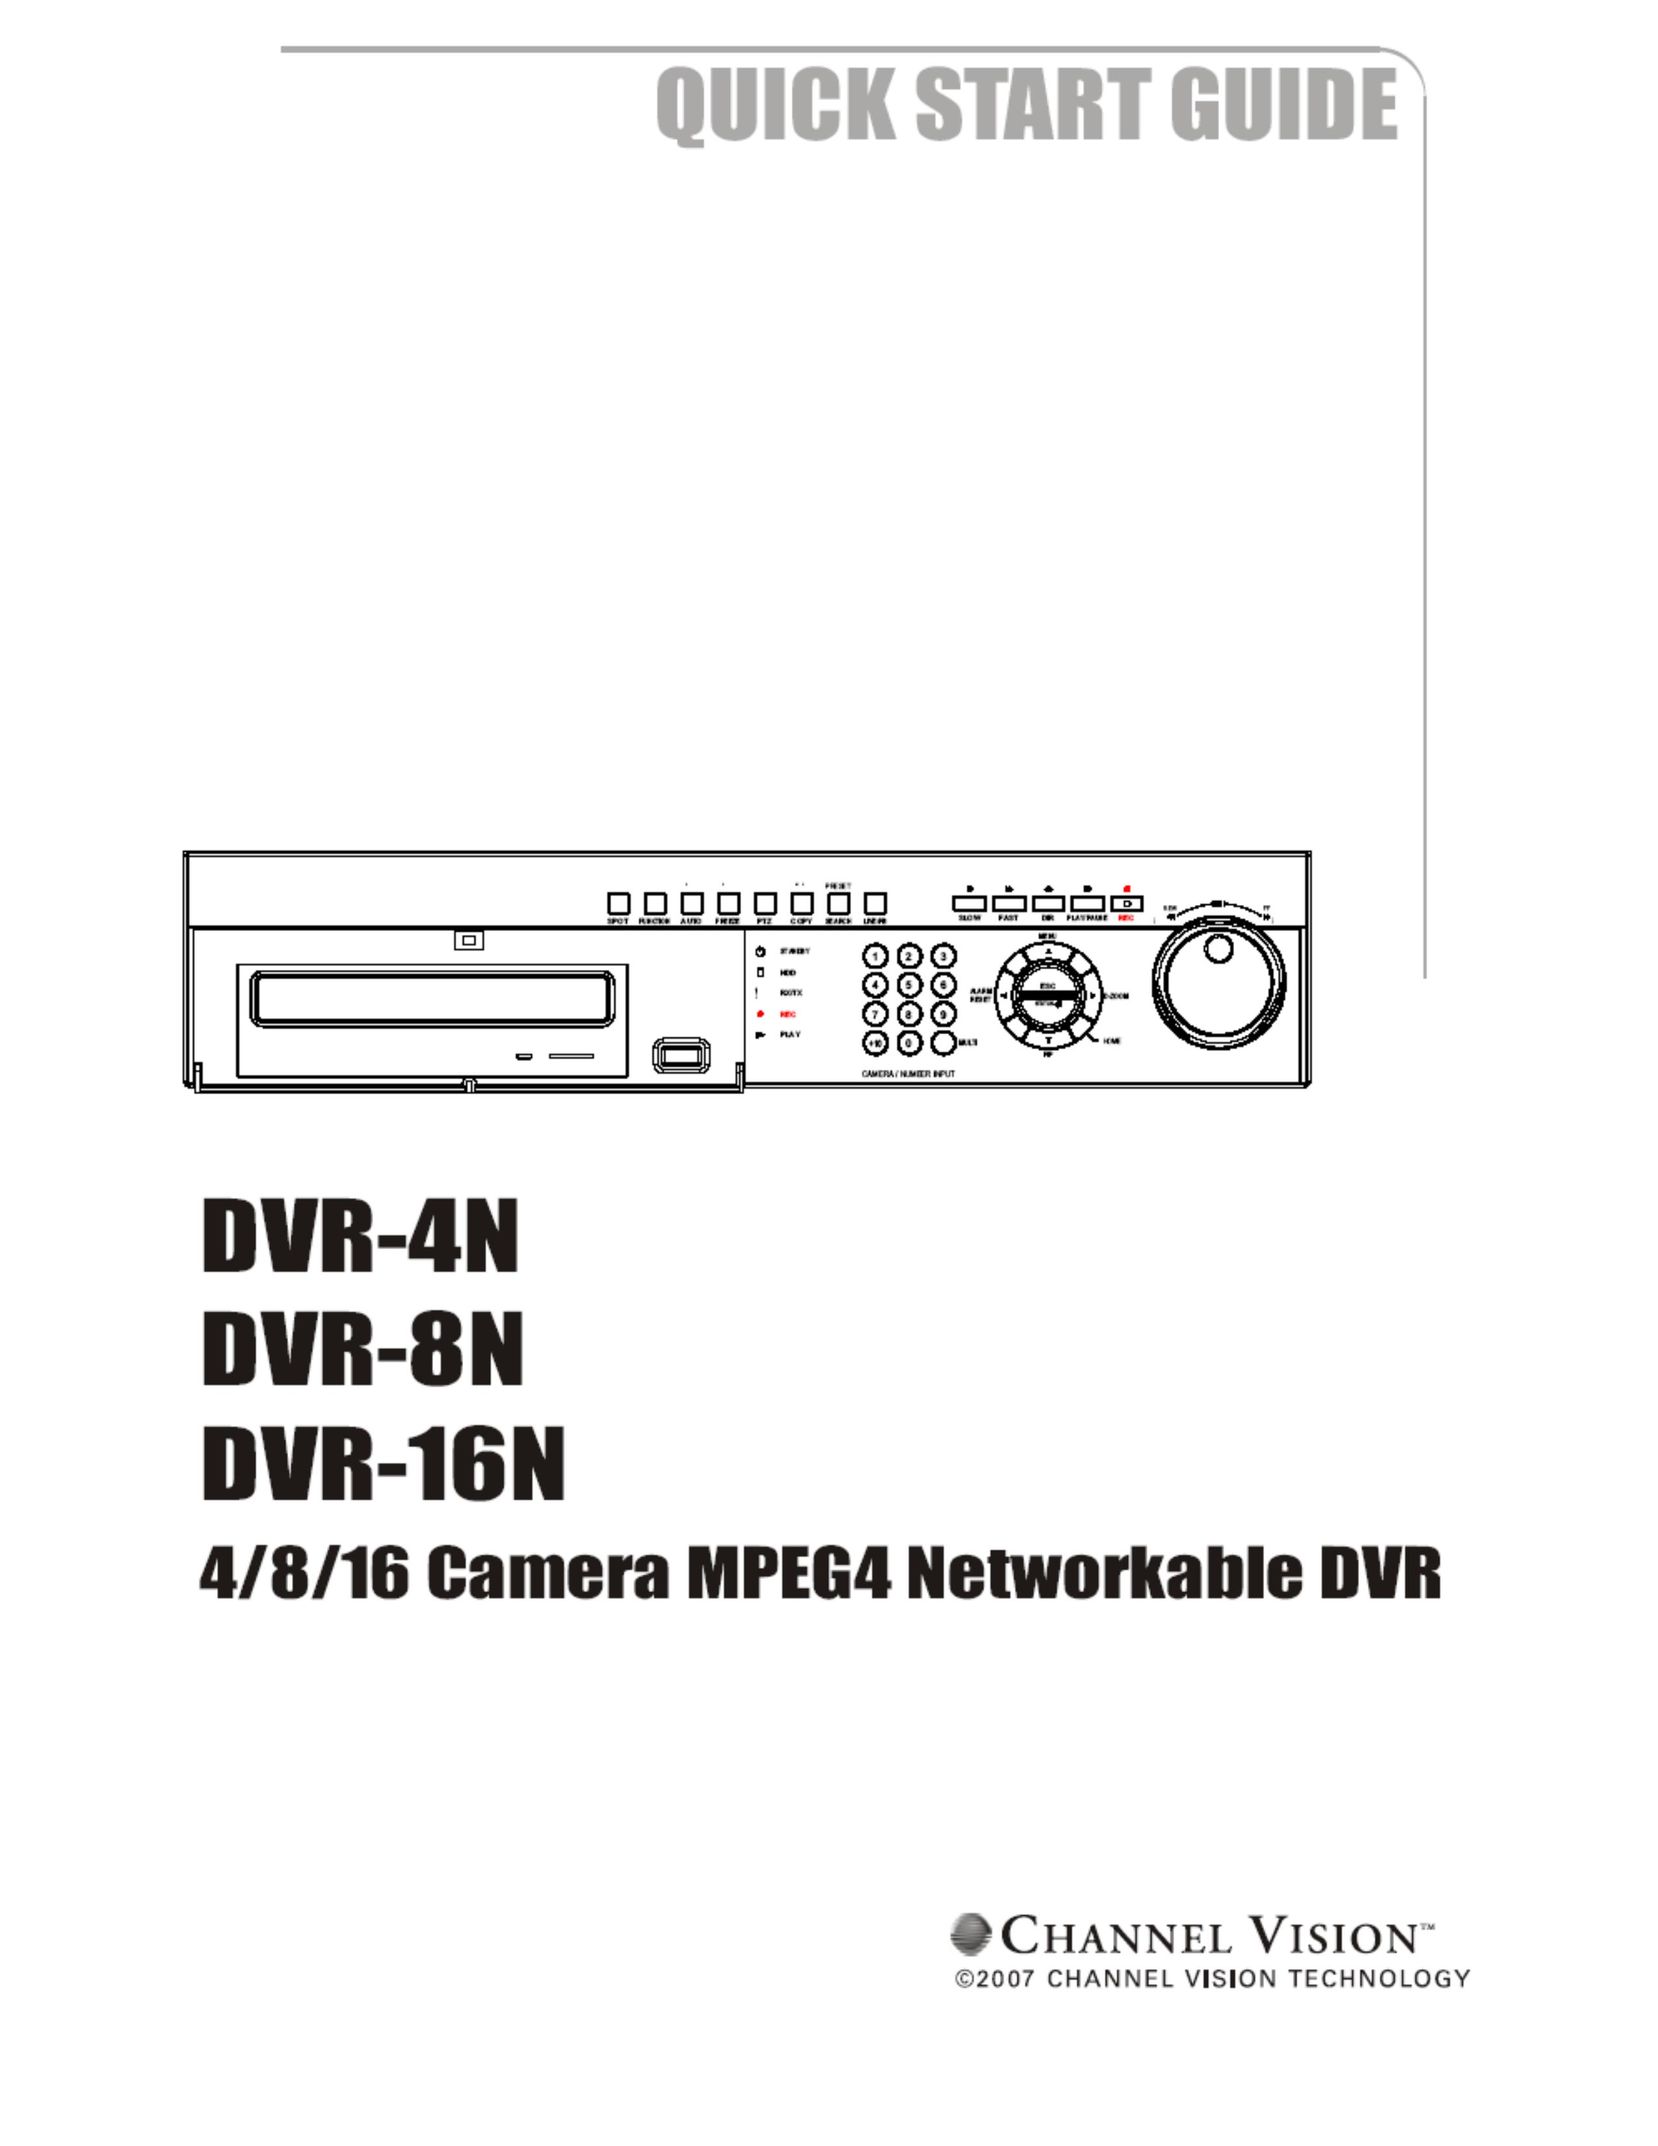 Channel Vision DVR-8N DVR User Manual